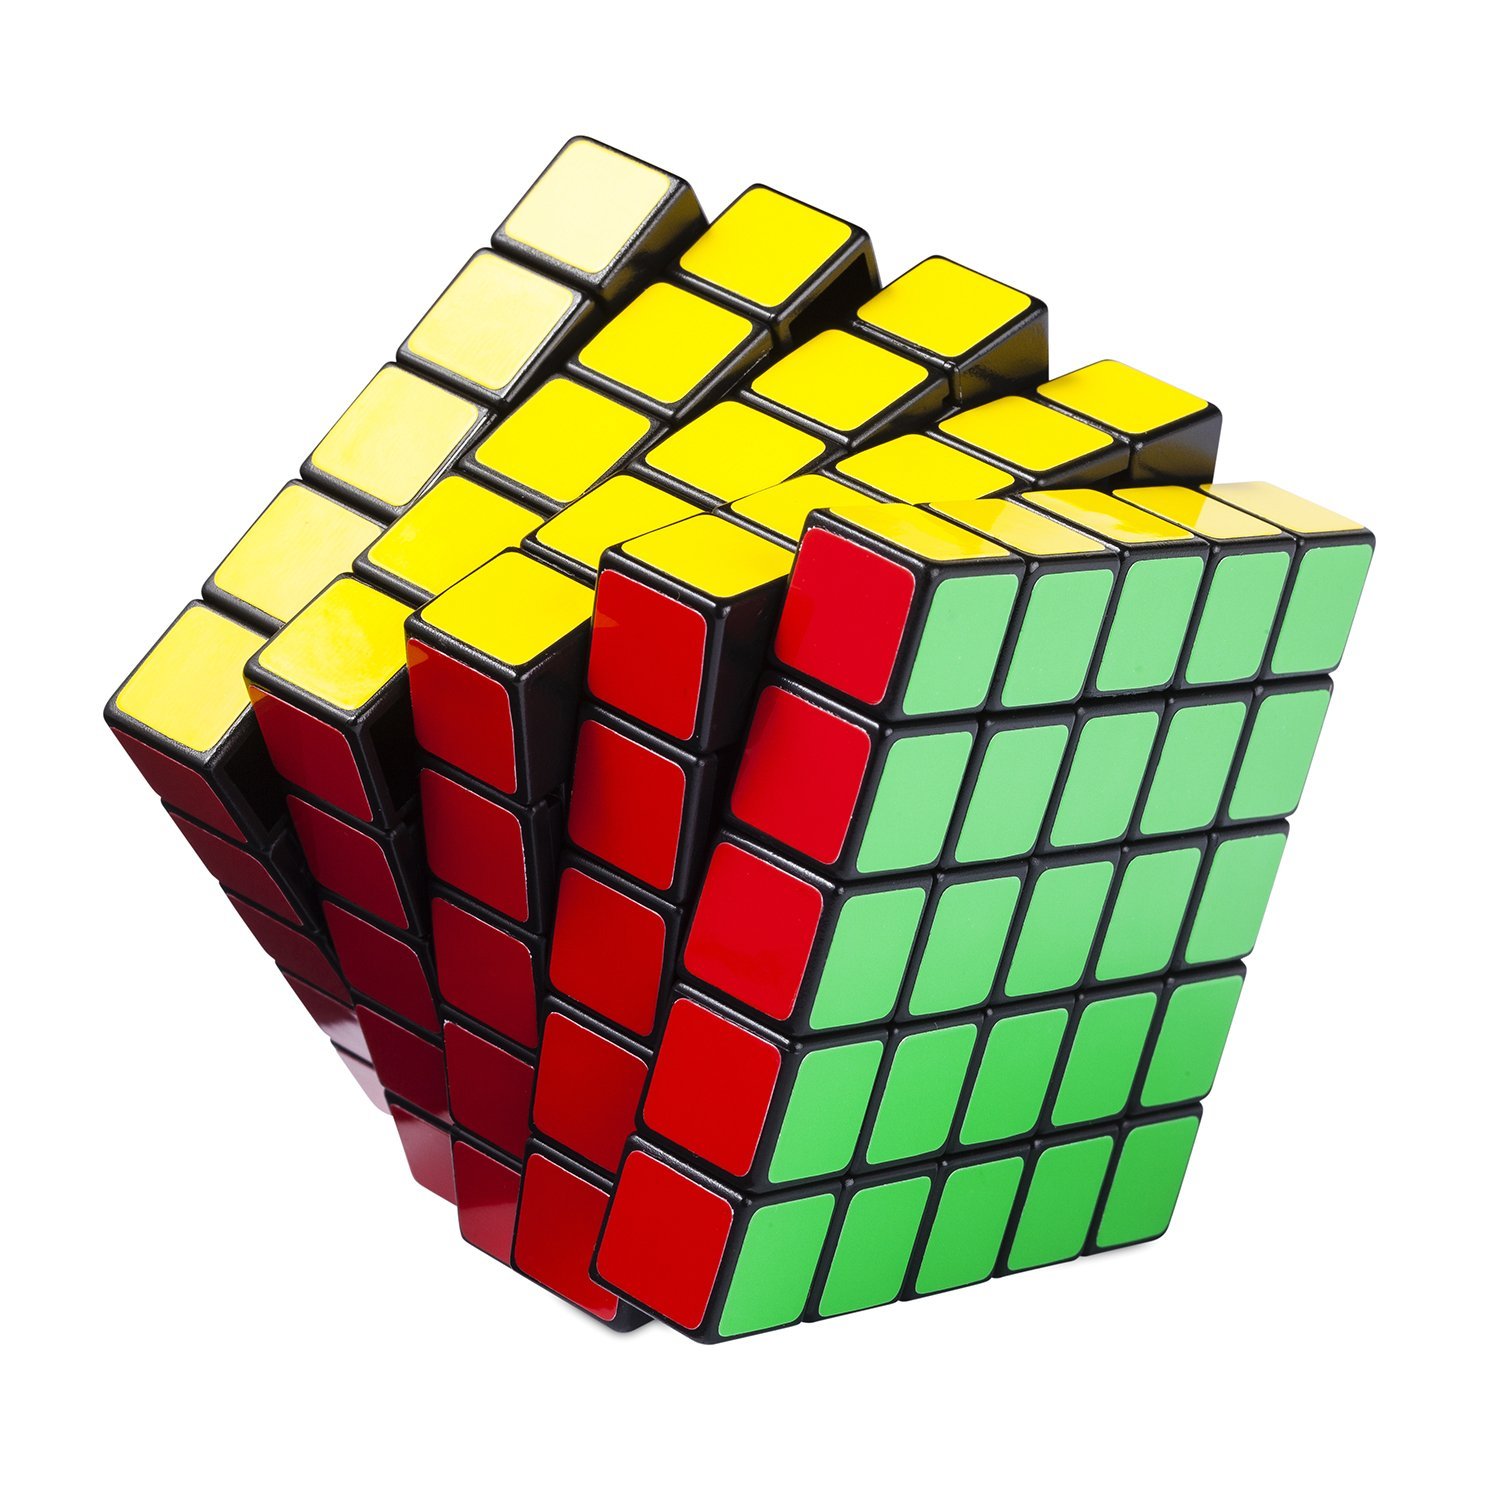 cubikon 5x5 zauberwürfel drehmechanismus